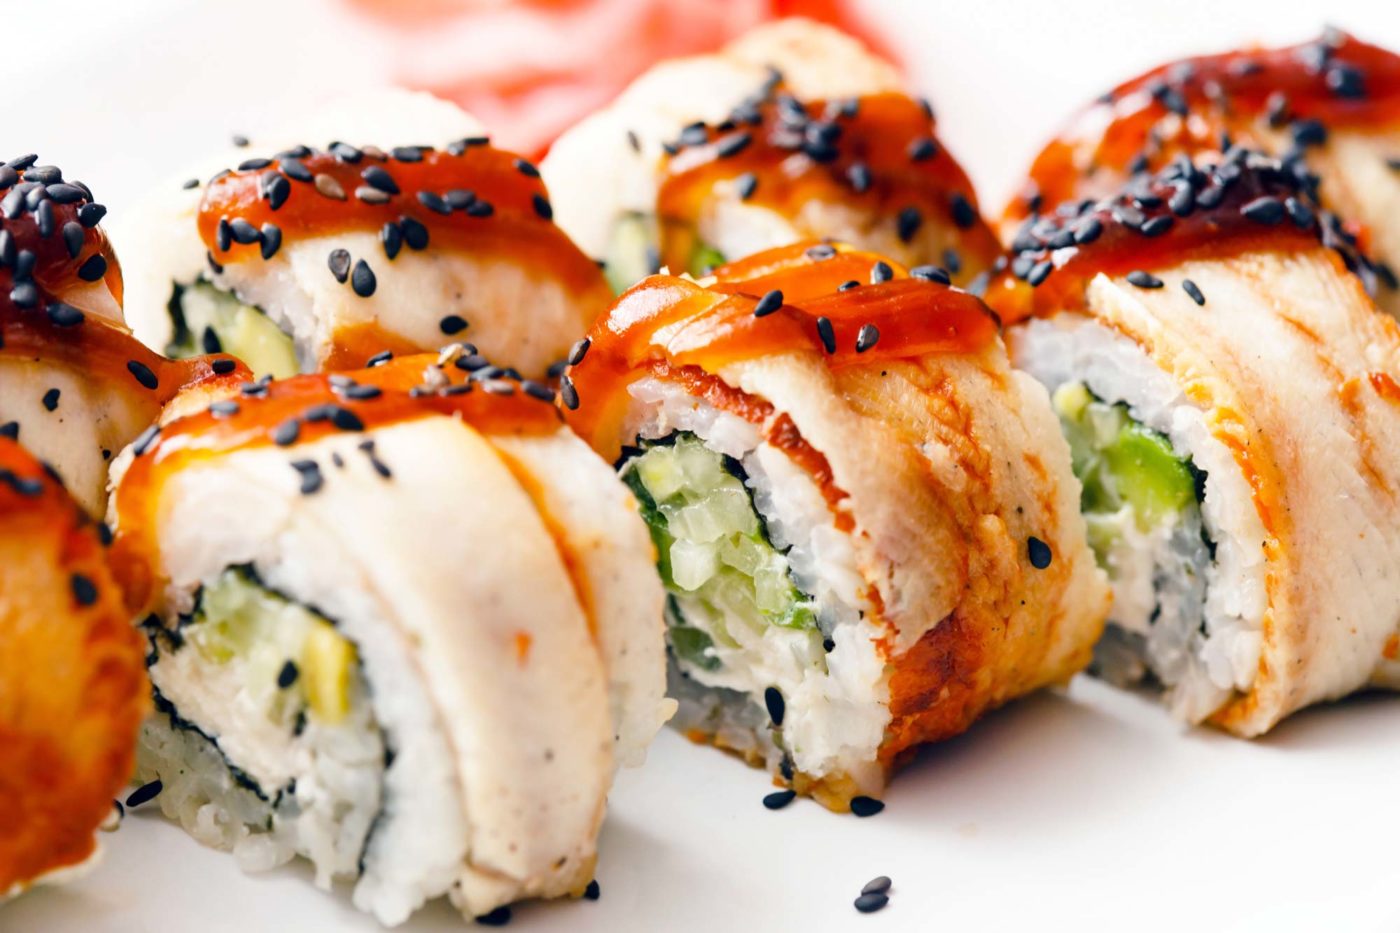 Sushi pairing